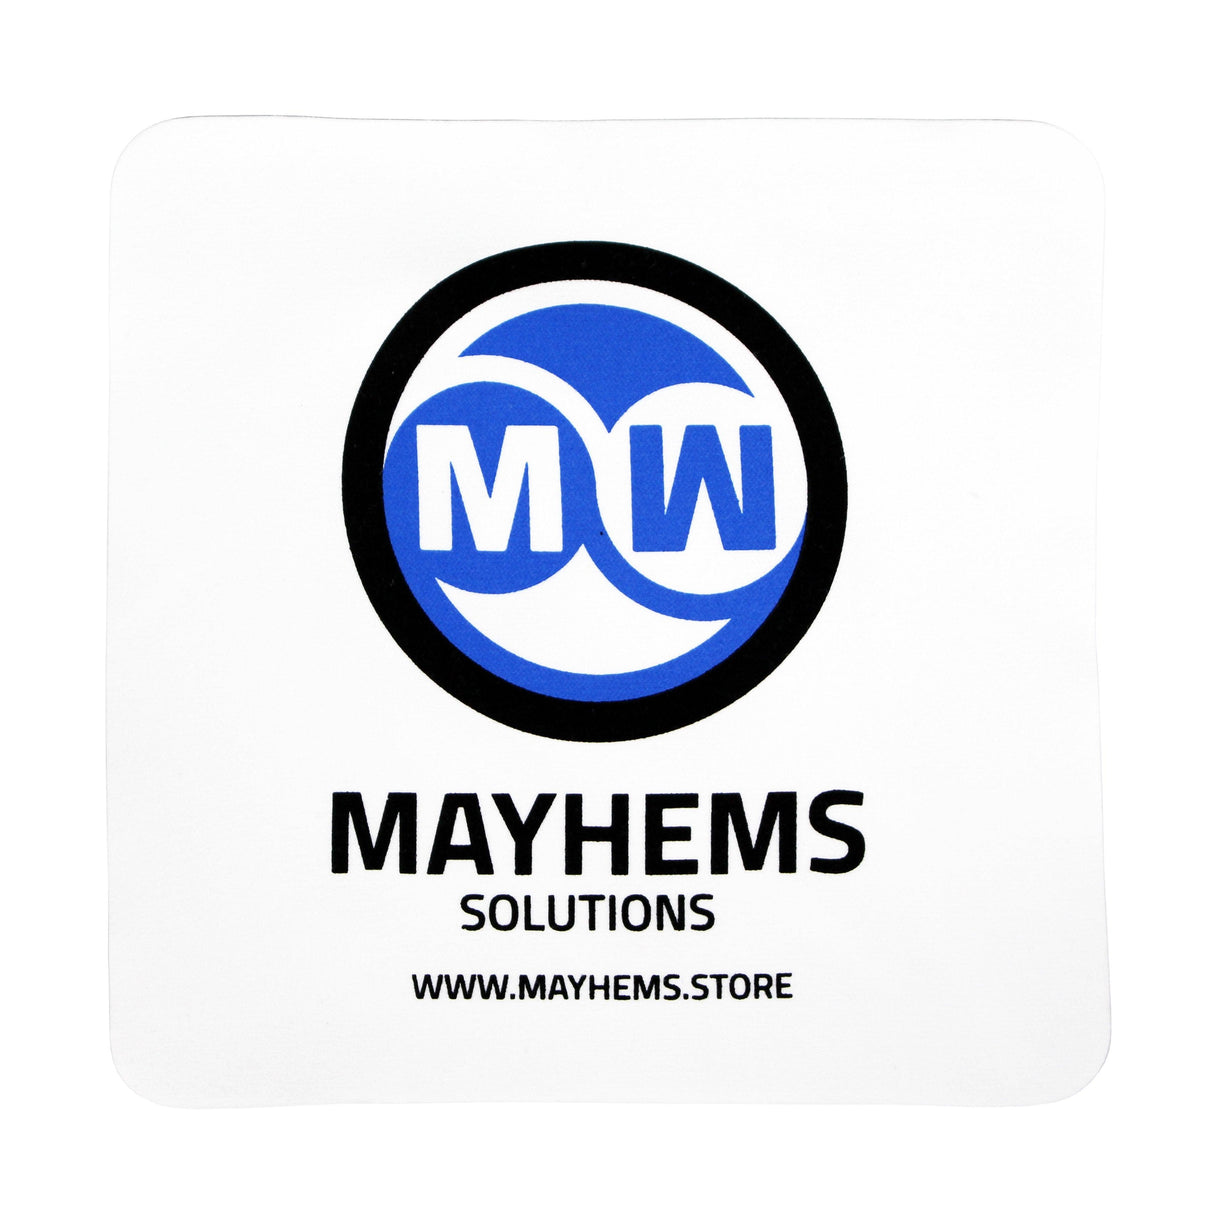 Mayhems - Premium Soft Tubing - Ultra Flex PVC - High Flexibility Version, 13mm (1/2") ID x 19mm (3/4") OD, 3m Length - Digital Outpost LLC